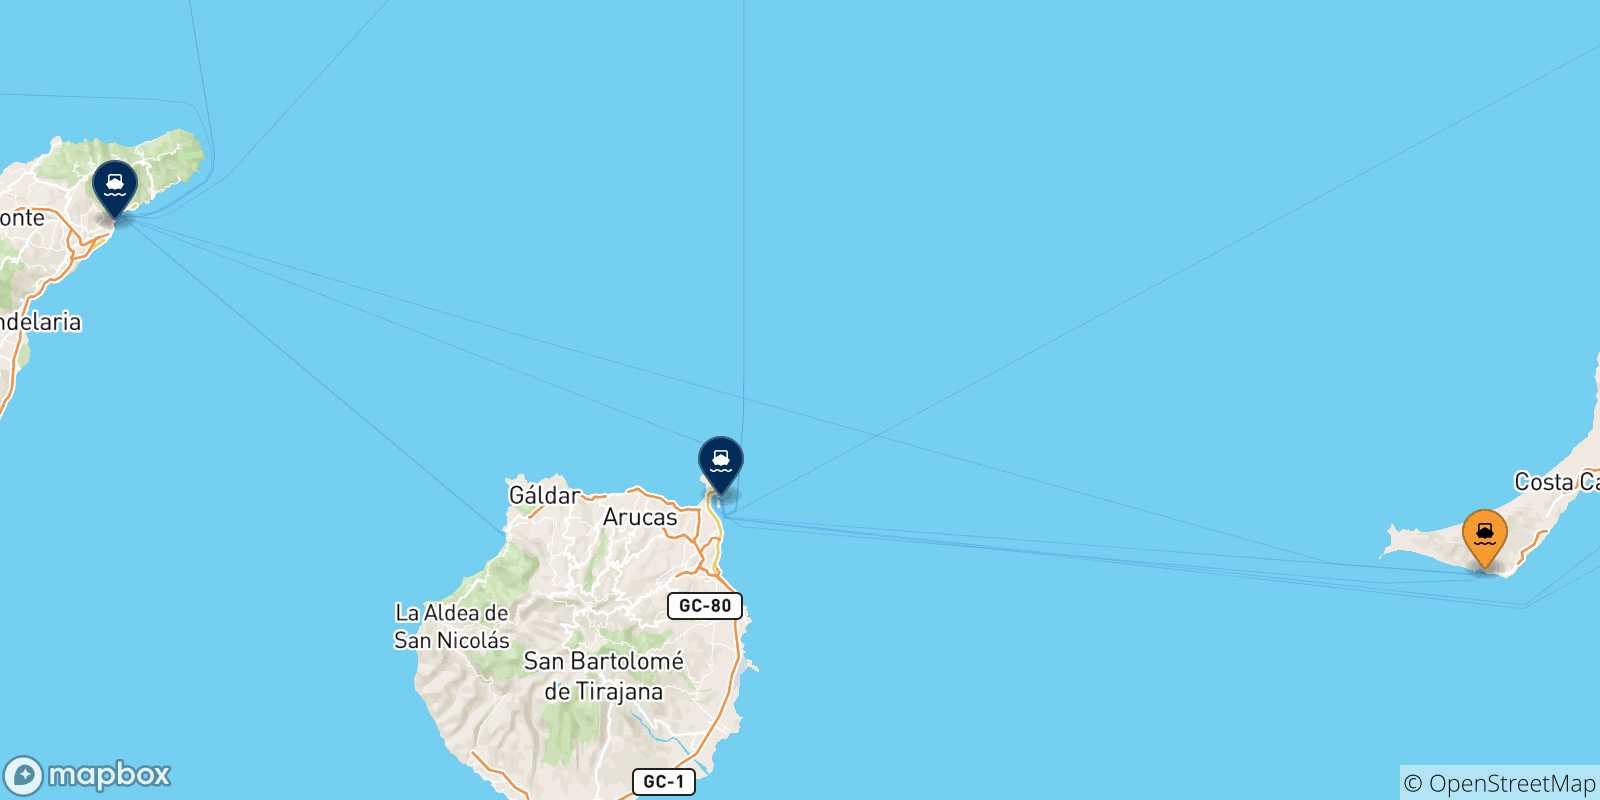 Mappa delle possibili rotte tra Morro Jable (Fuerteventura) e le Isole Canarie